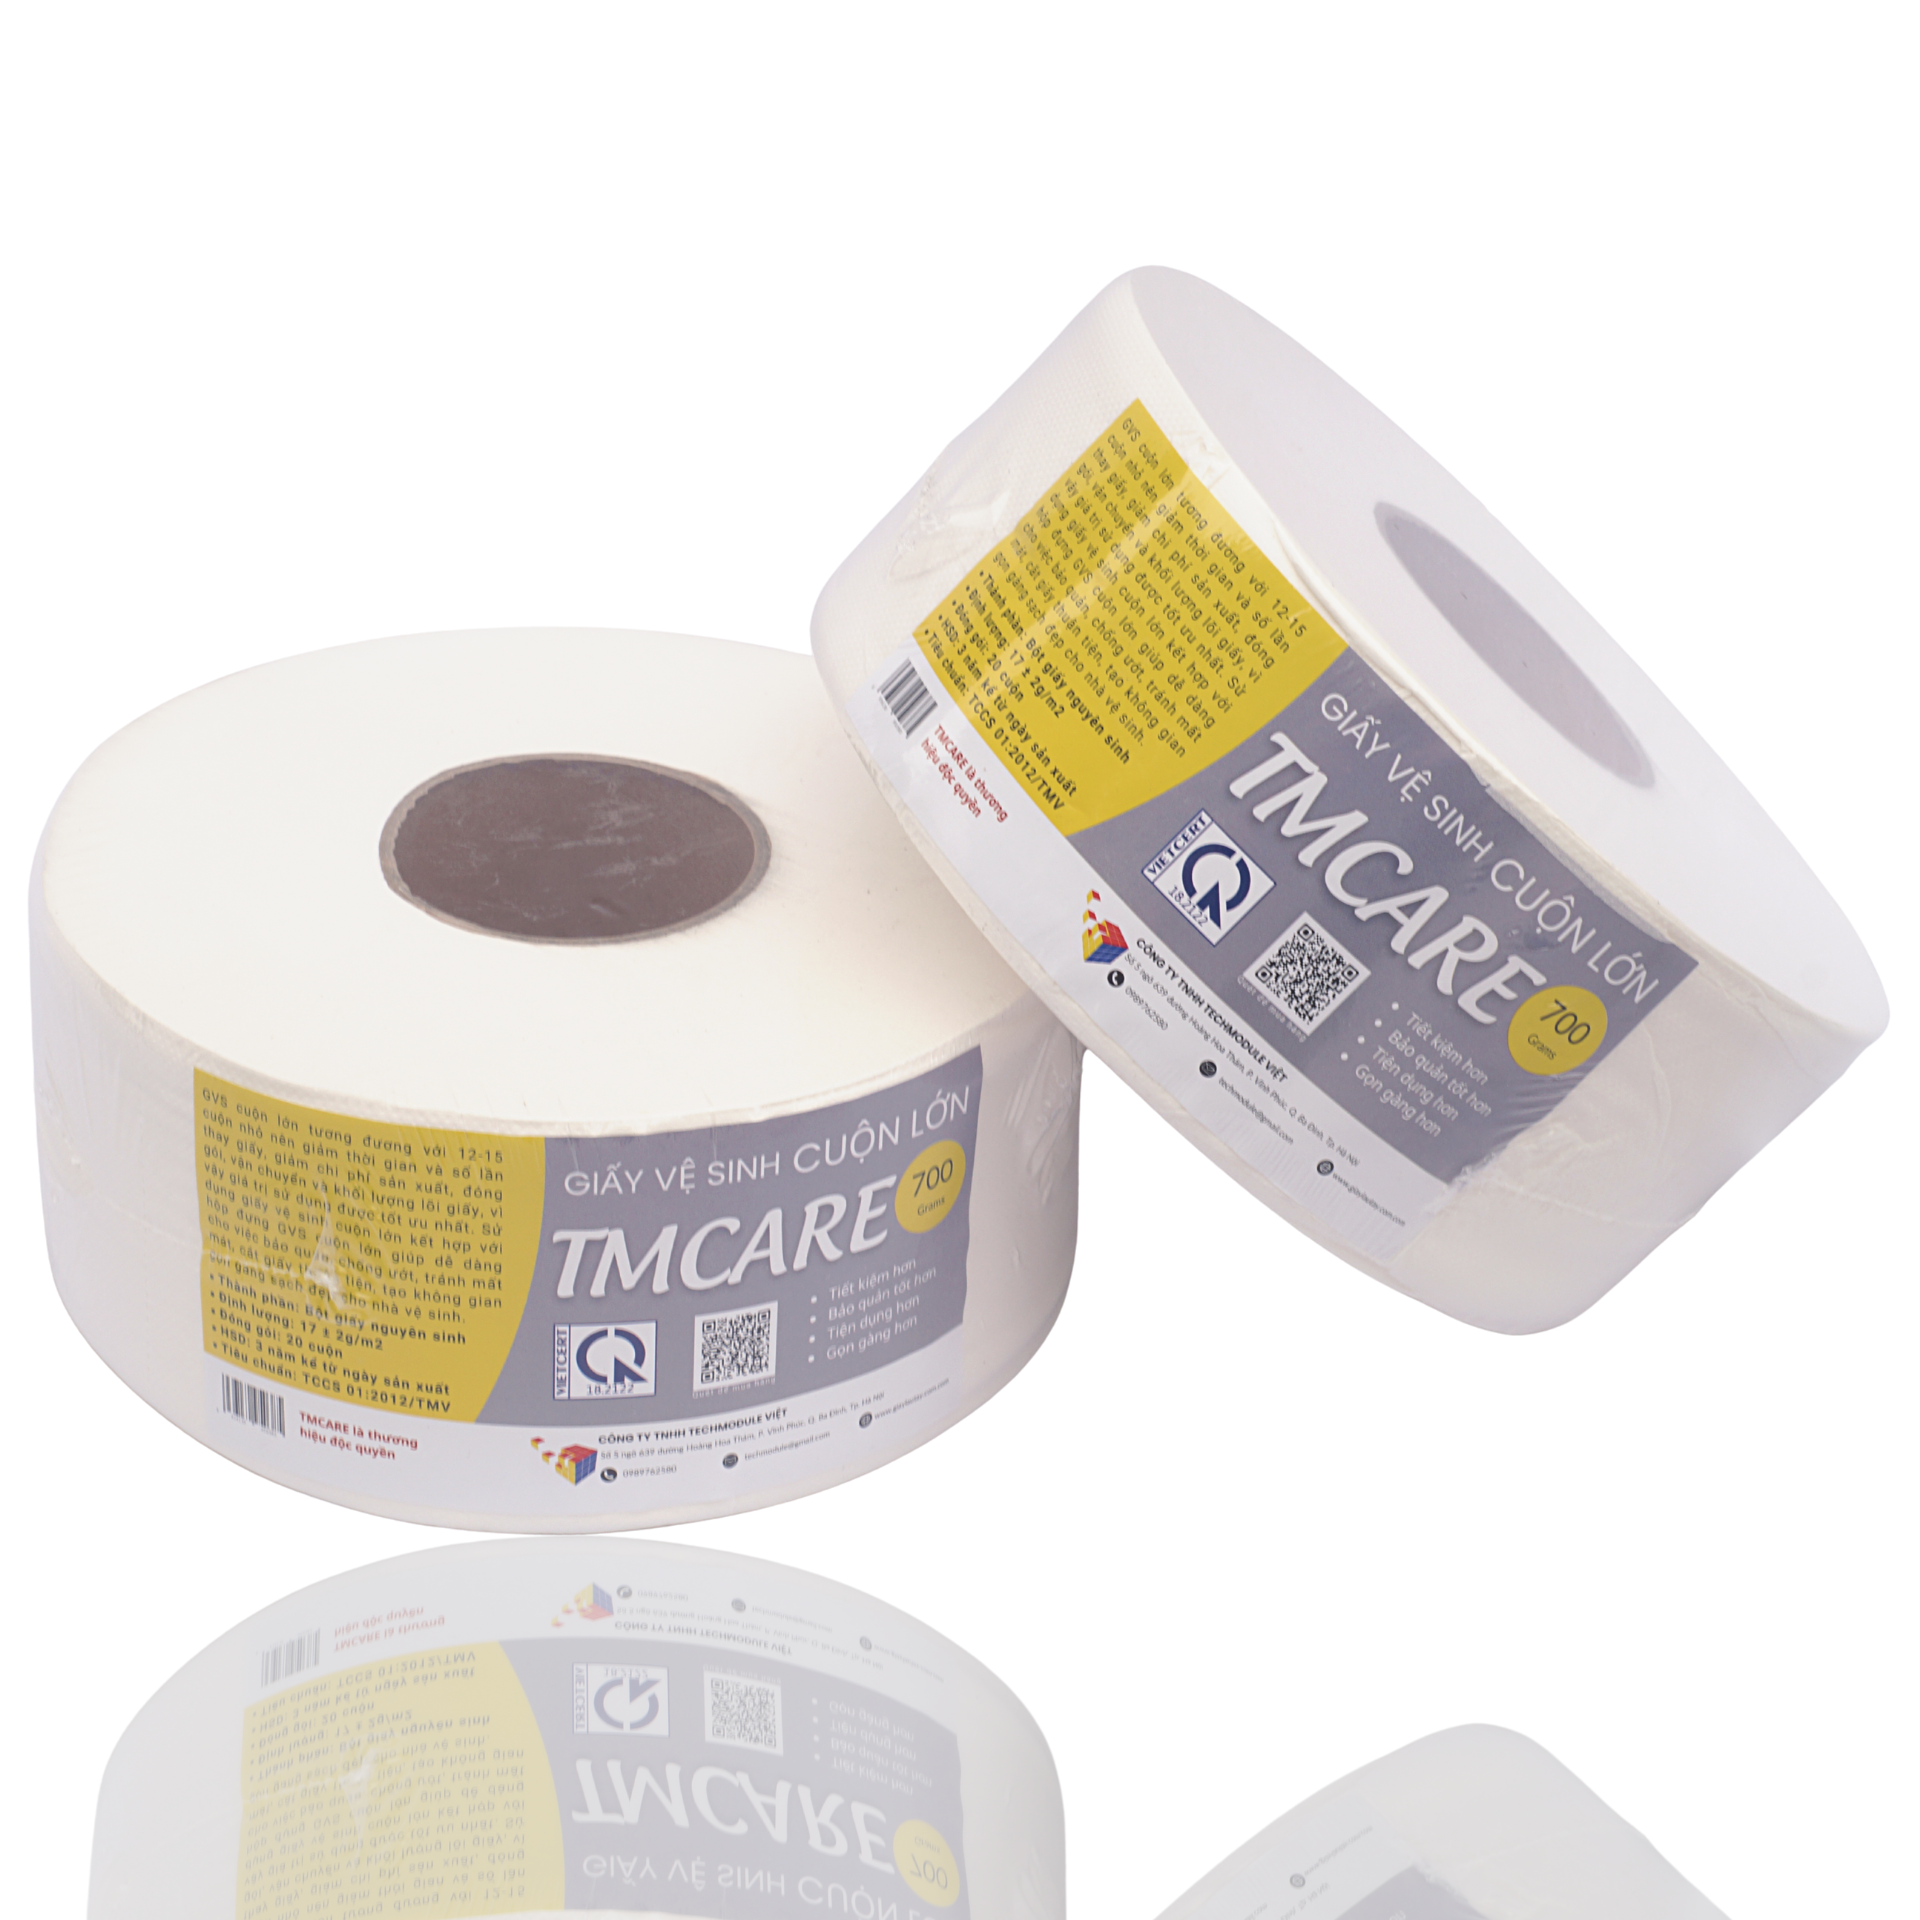 TMcare - Cuộn giấy vệ sinh siêu lớn, giải pháp tiện lợi cho mọi nhà